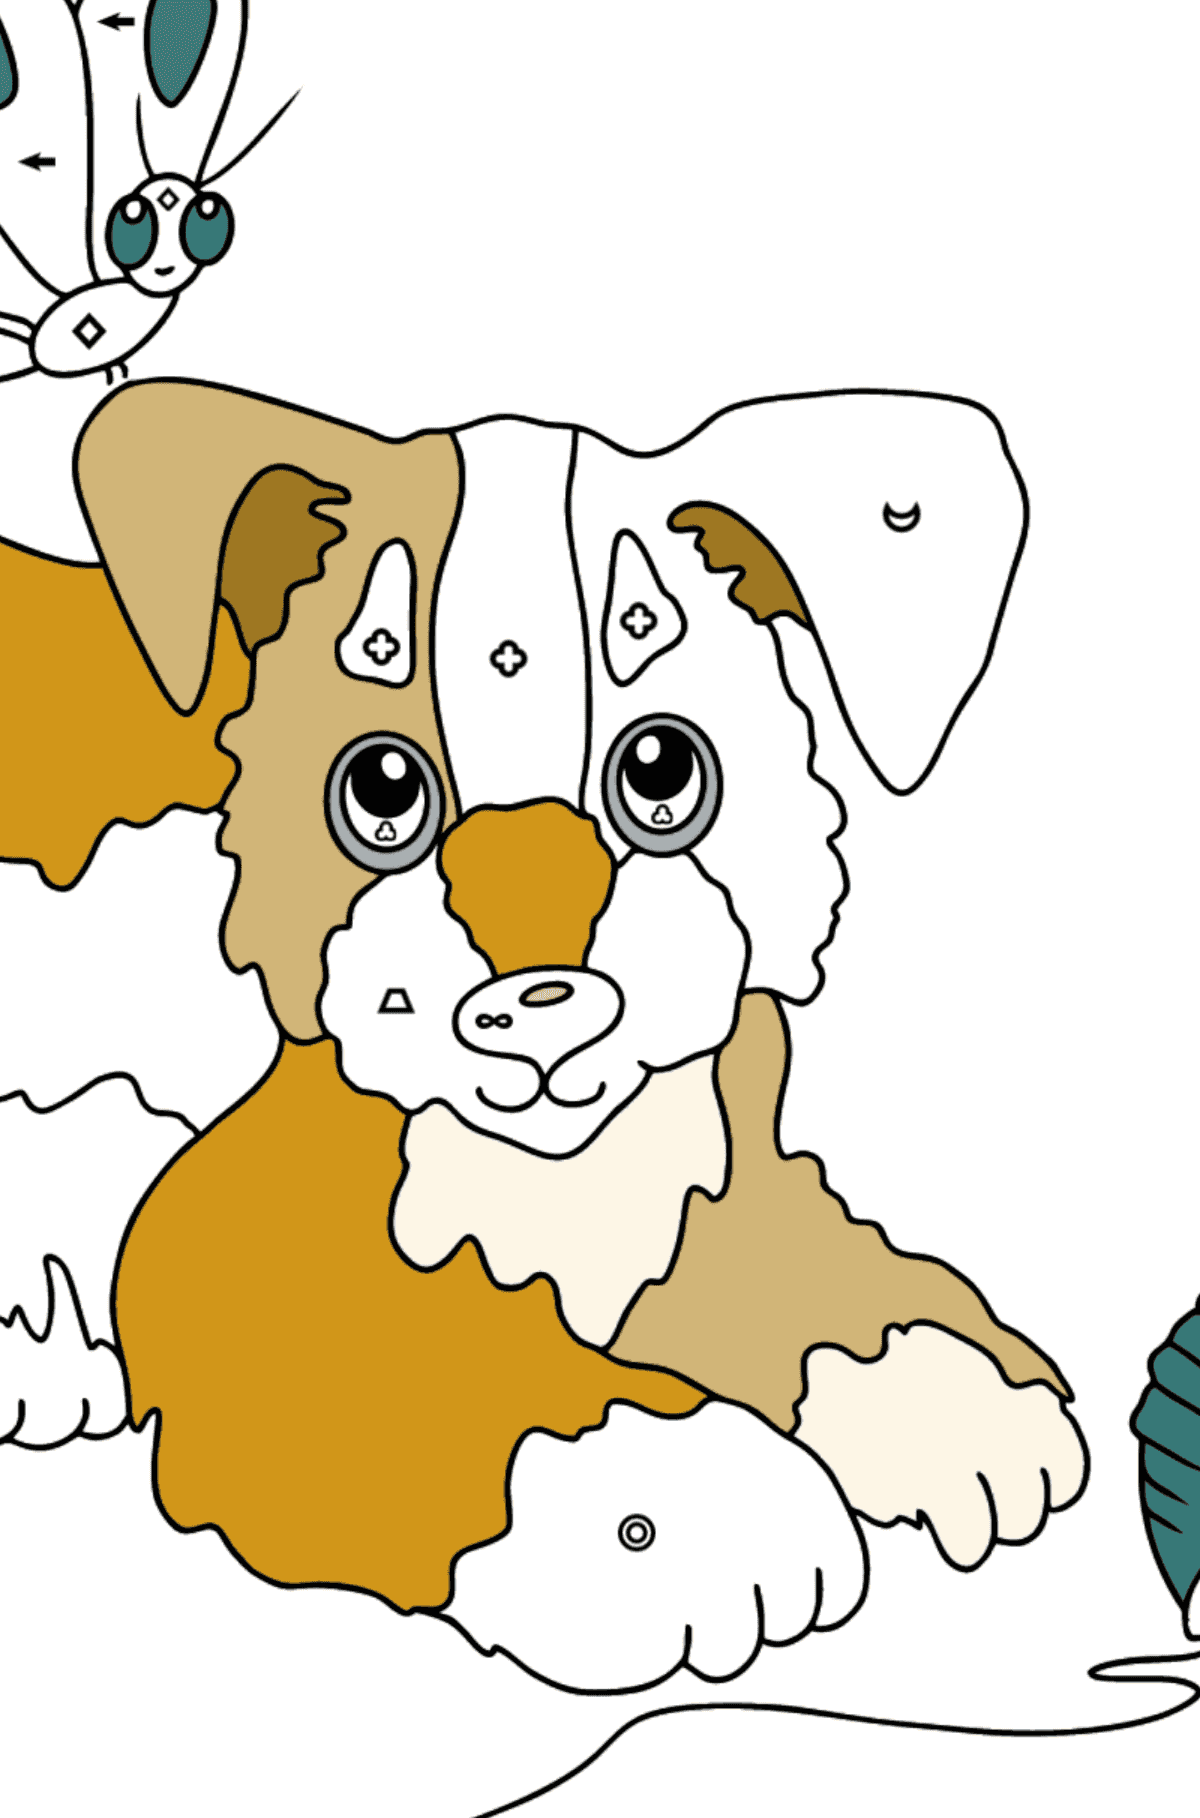 Dibujo para Colorear - Un Perro está Jugando con un Bola de Estambre y con Mariposas - Colorear por Símbolos para Niños